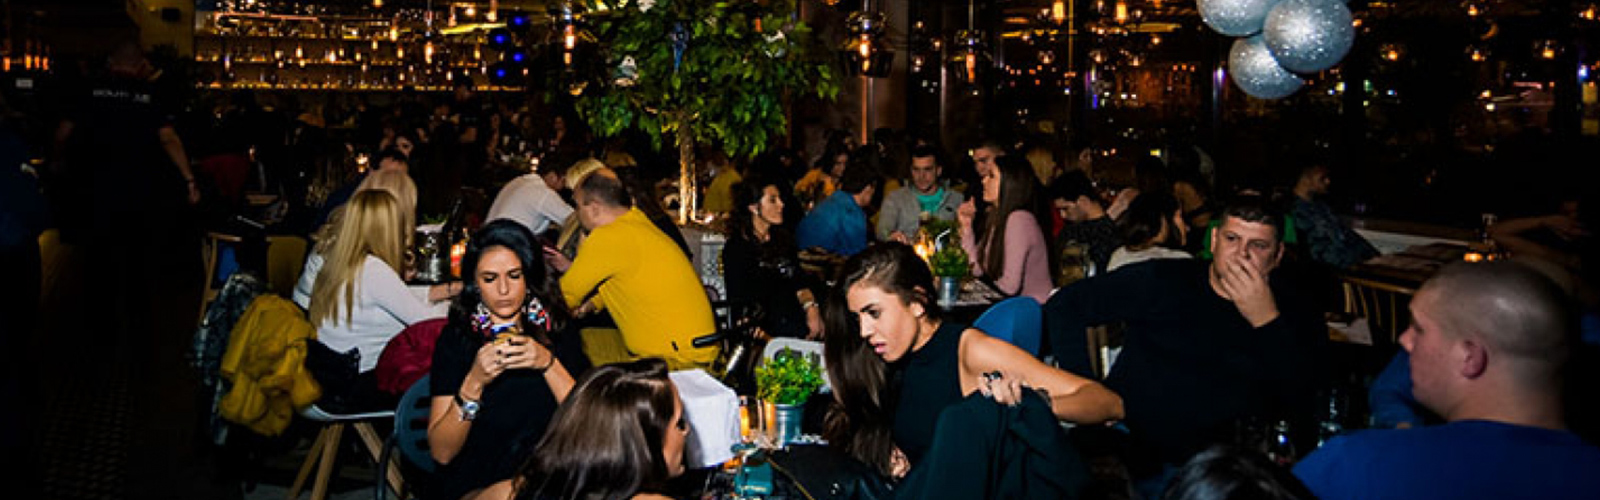 Concierge Belgrade | Restoran Boutique 1